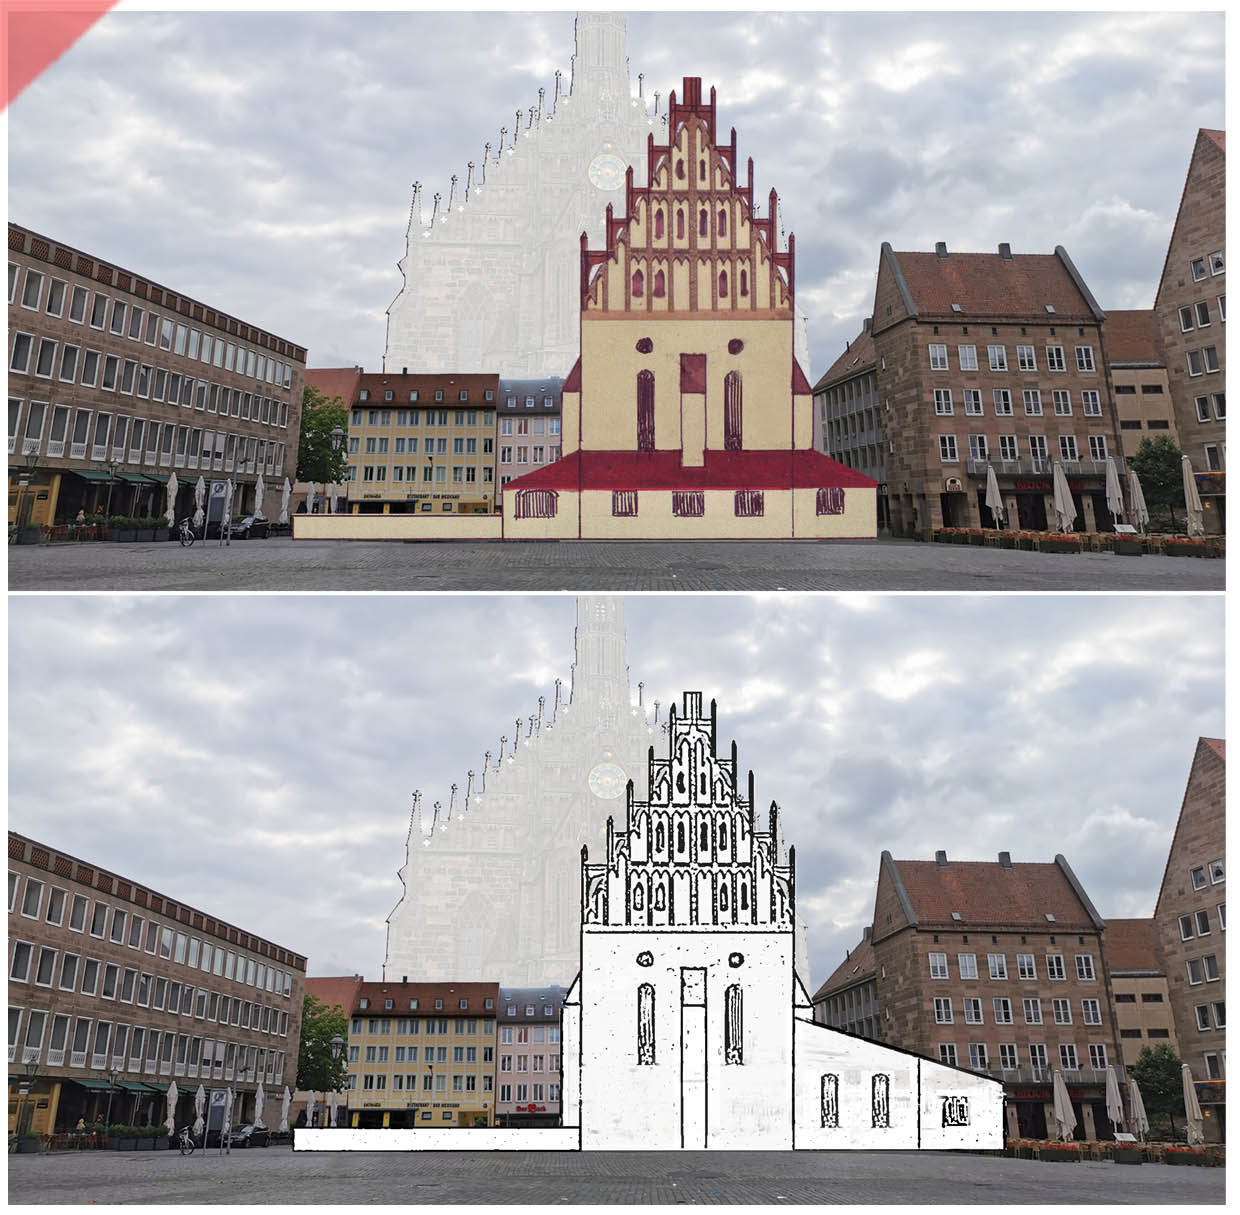 Synagoge-Hauptmarkt-farbig-hell-vergleich-Nuernberg-bis-1349-zerstoerung-fassade-pogrom-rekonstruktion-fassade-synagoge-prag-alt-neu